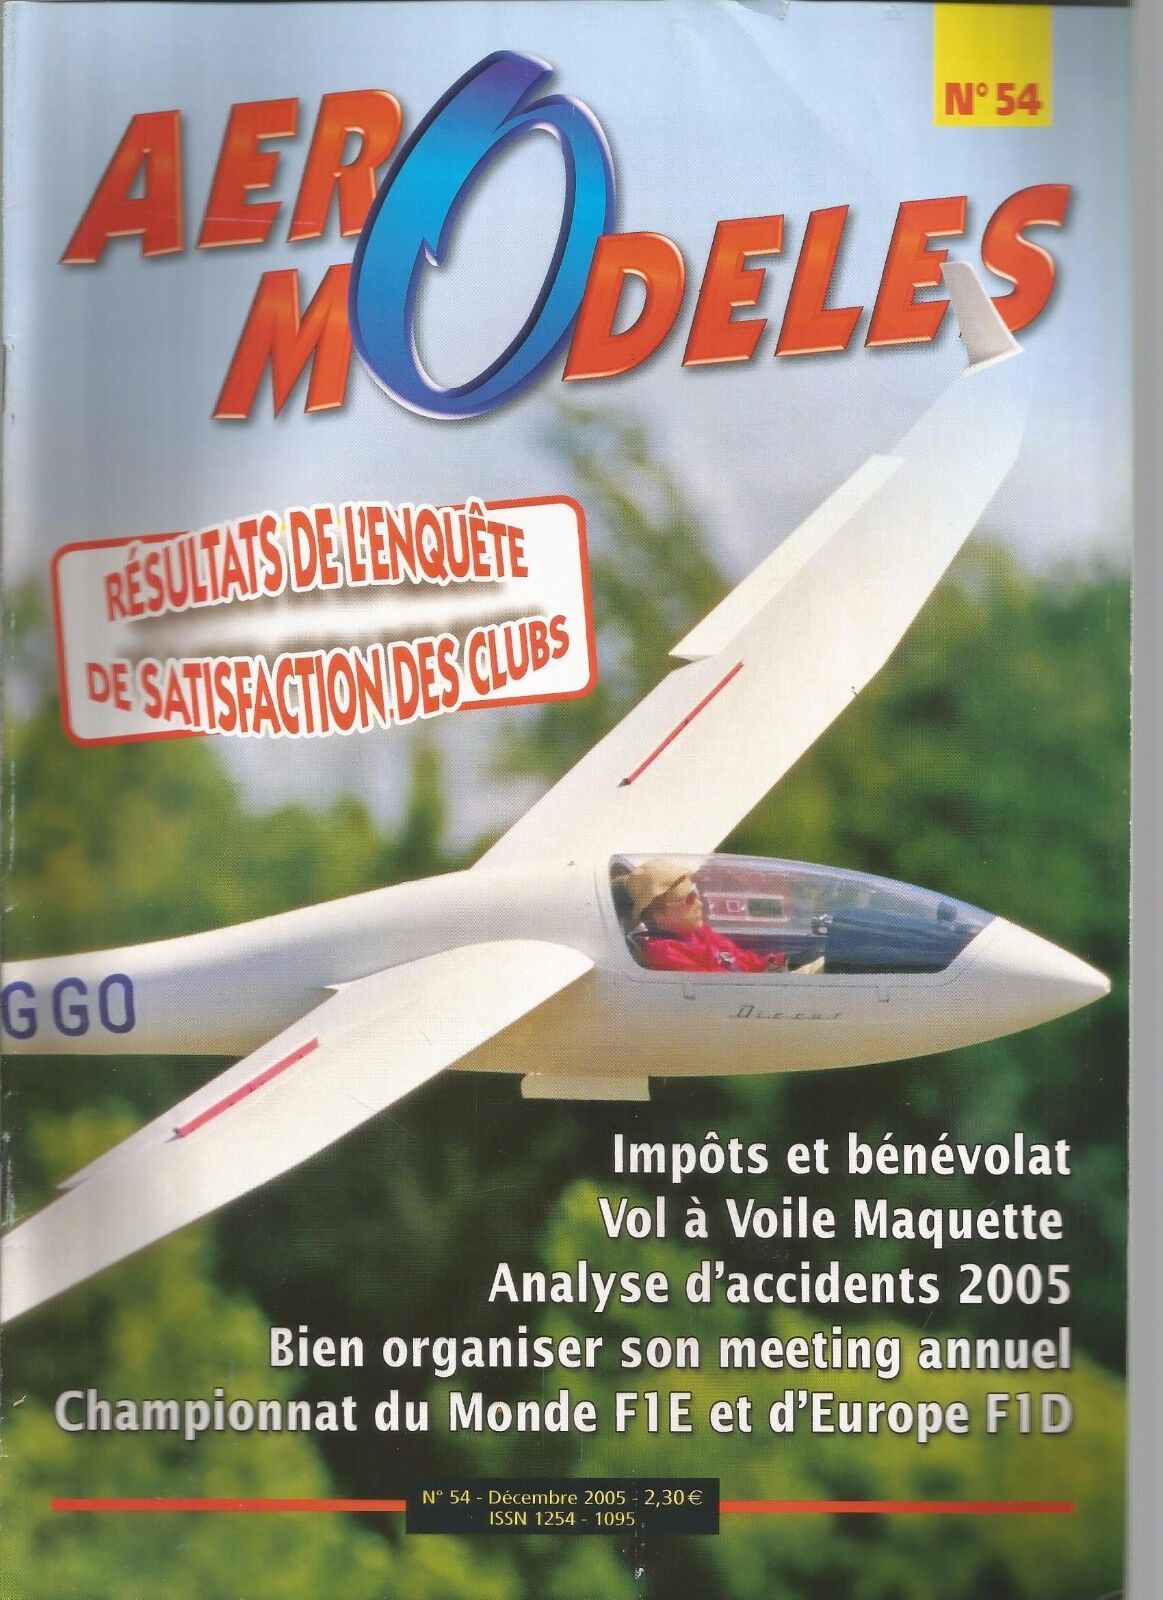 Aero models no. 54-f1e and f1d-flight has veil maquette-organize a meeting